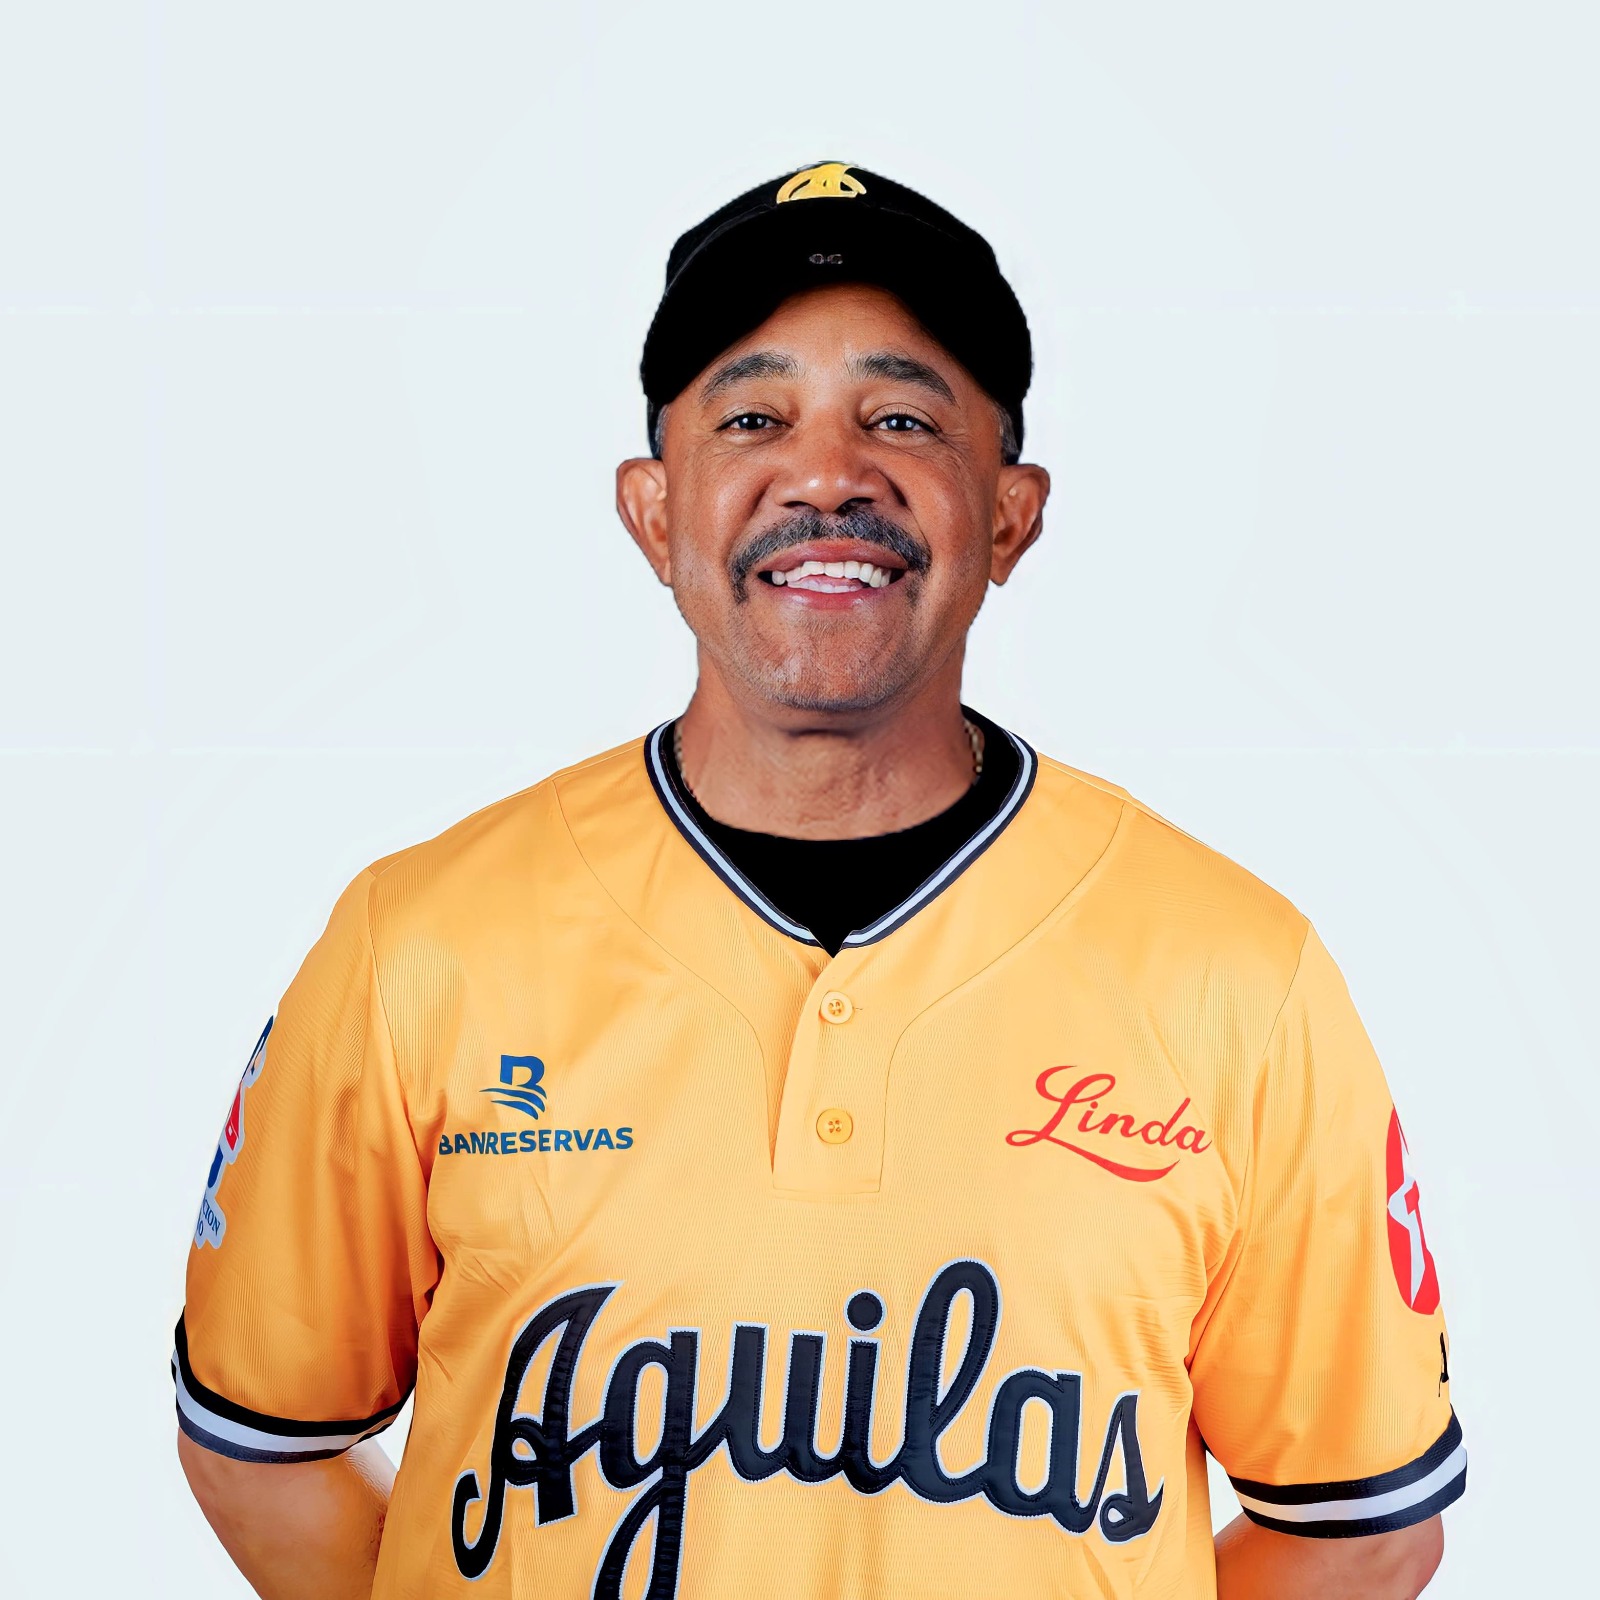 Dominicana Equipo de béisbol – aguilas cibaeñas – Majestic Jerseys